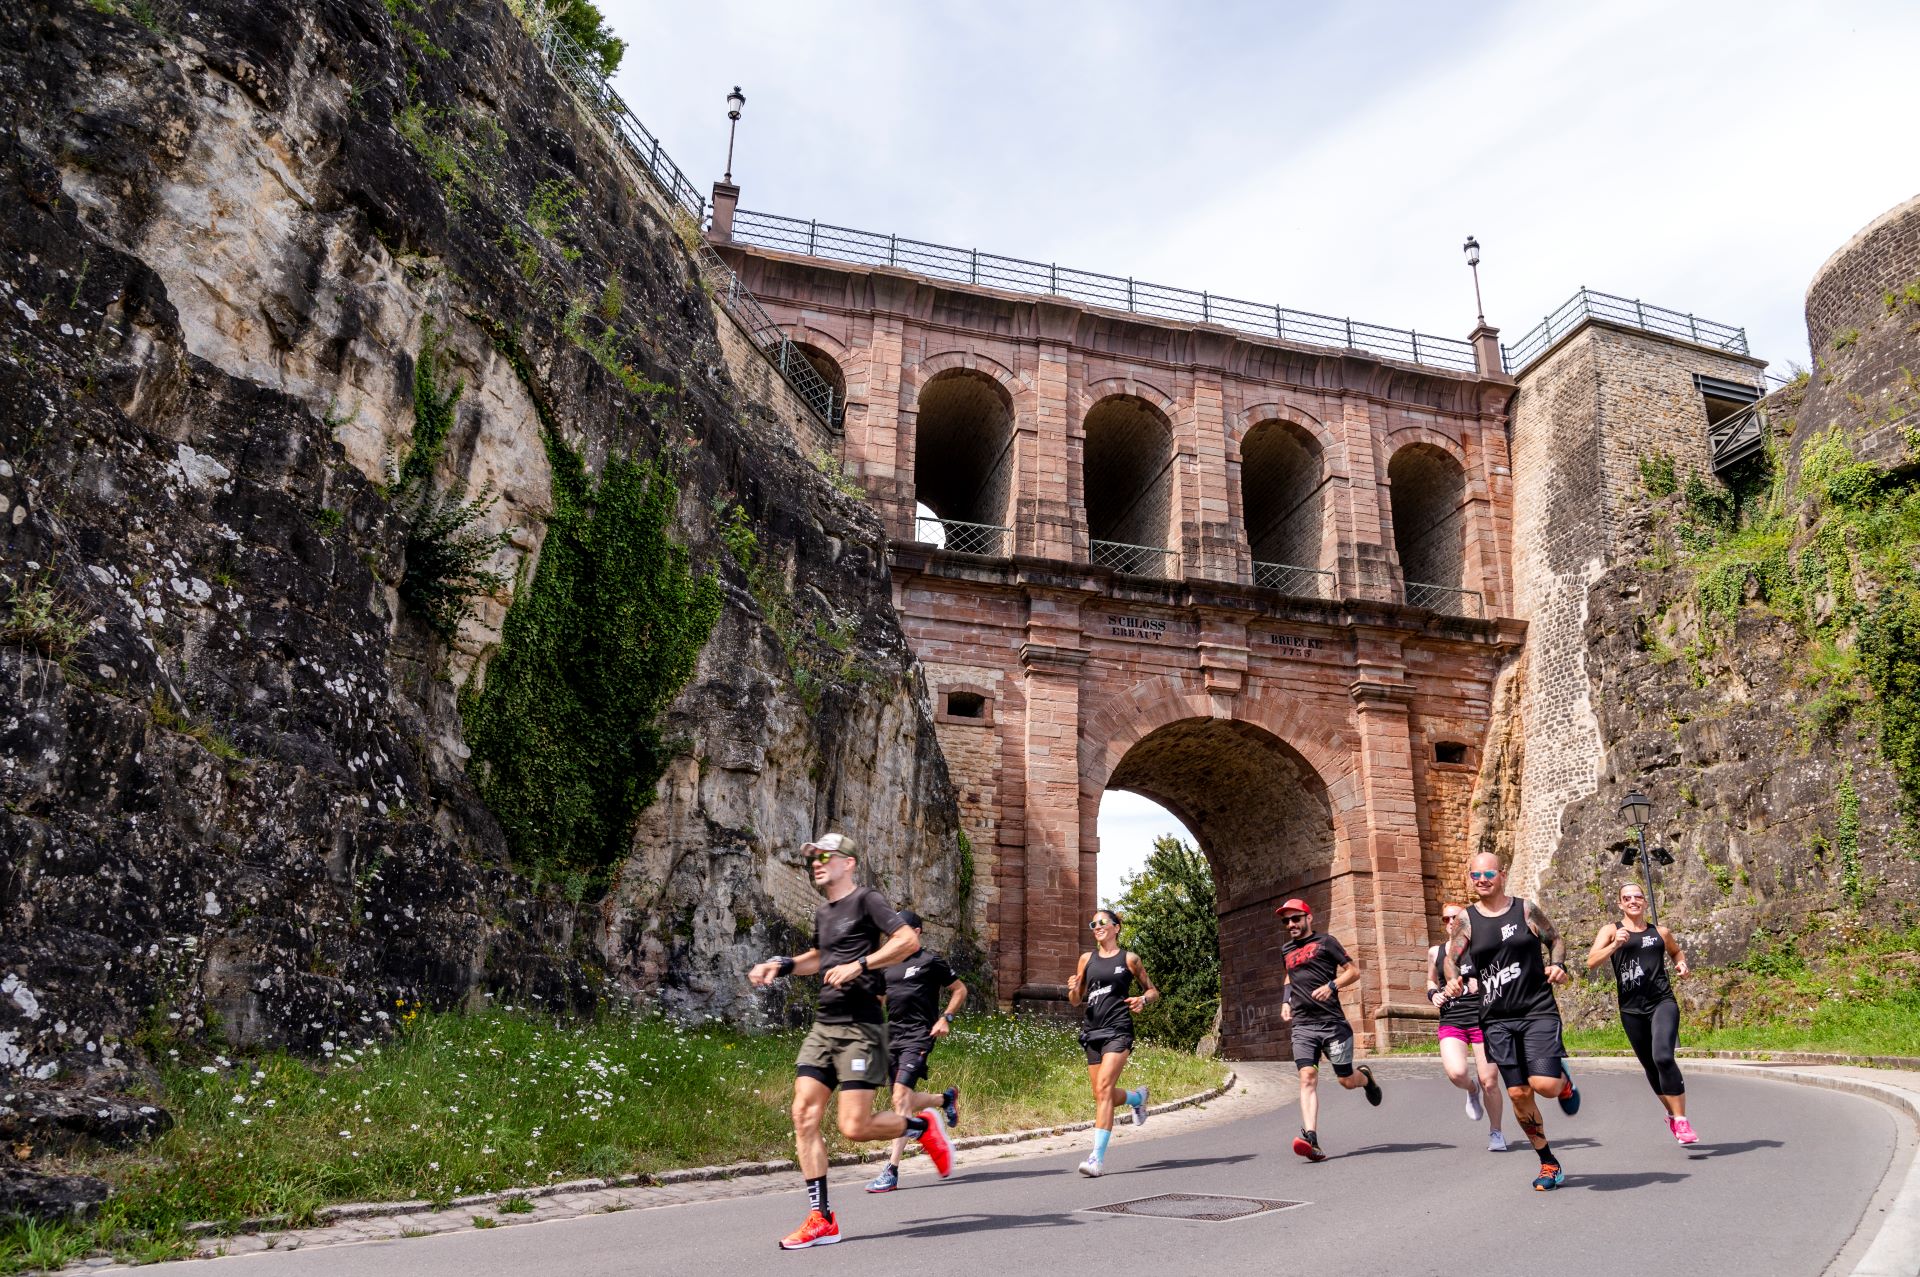 Sieben Mitglieder der Laufgruppe FatBetty.run tauchen unter einer alten Steinbrücke in Luxemburg auf. Sie sind in schwarze Laufkleidung gekleidet und laufen auf einer gepflasterten Straße.